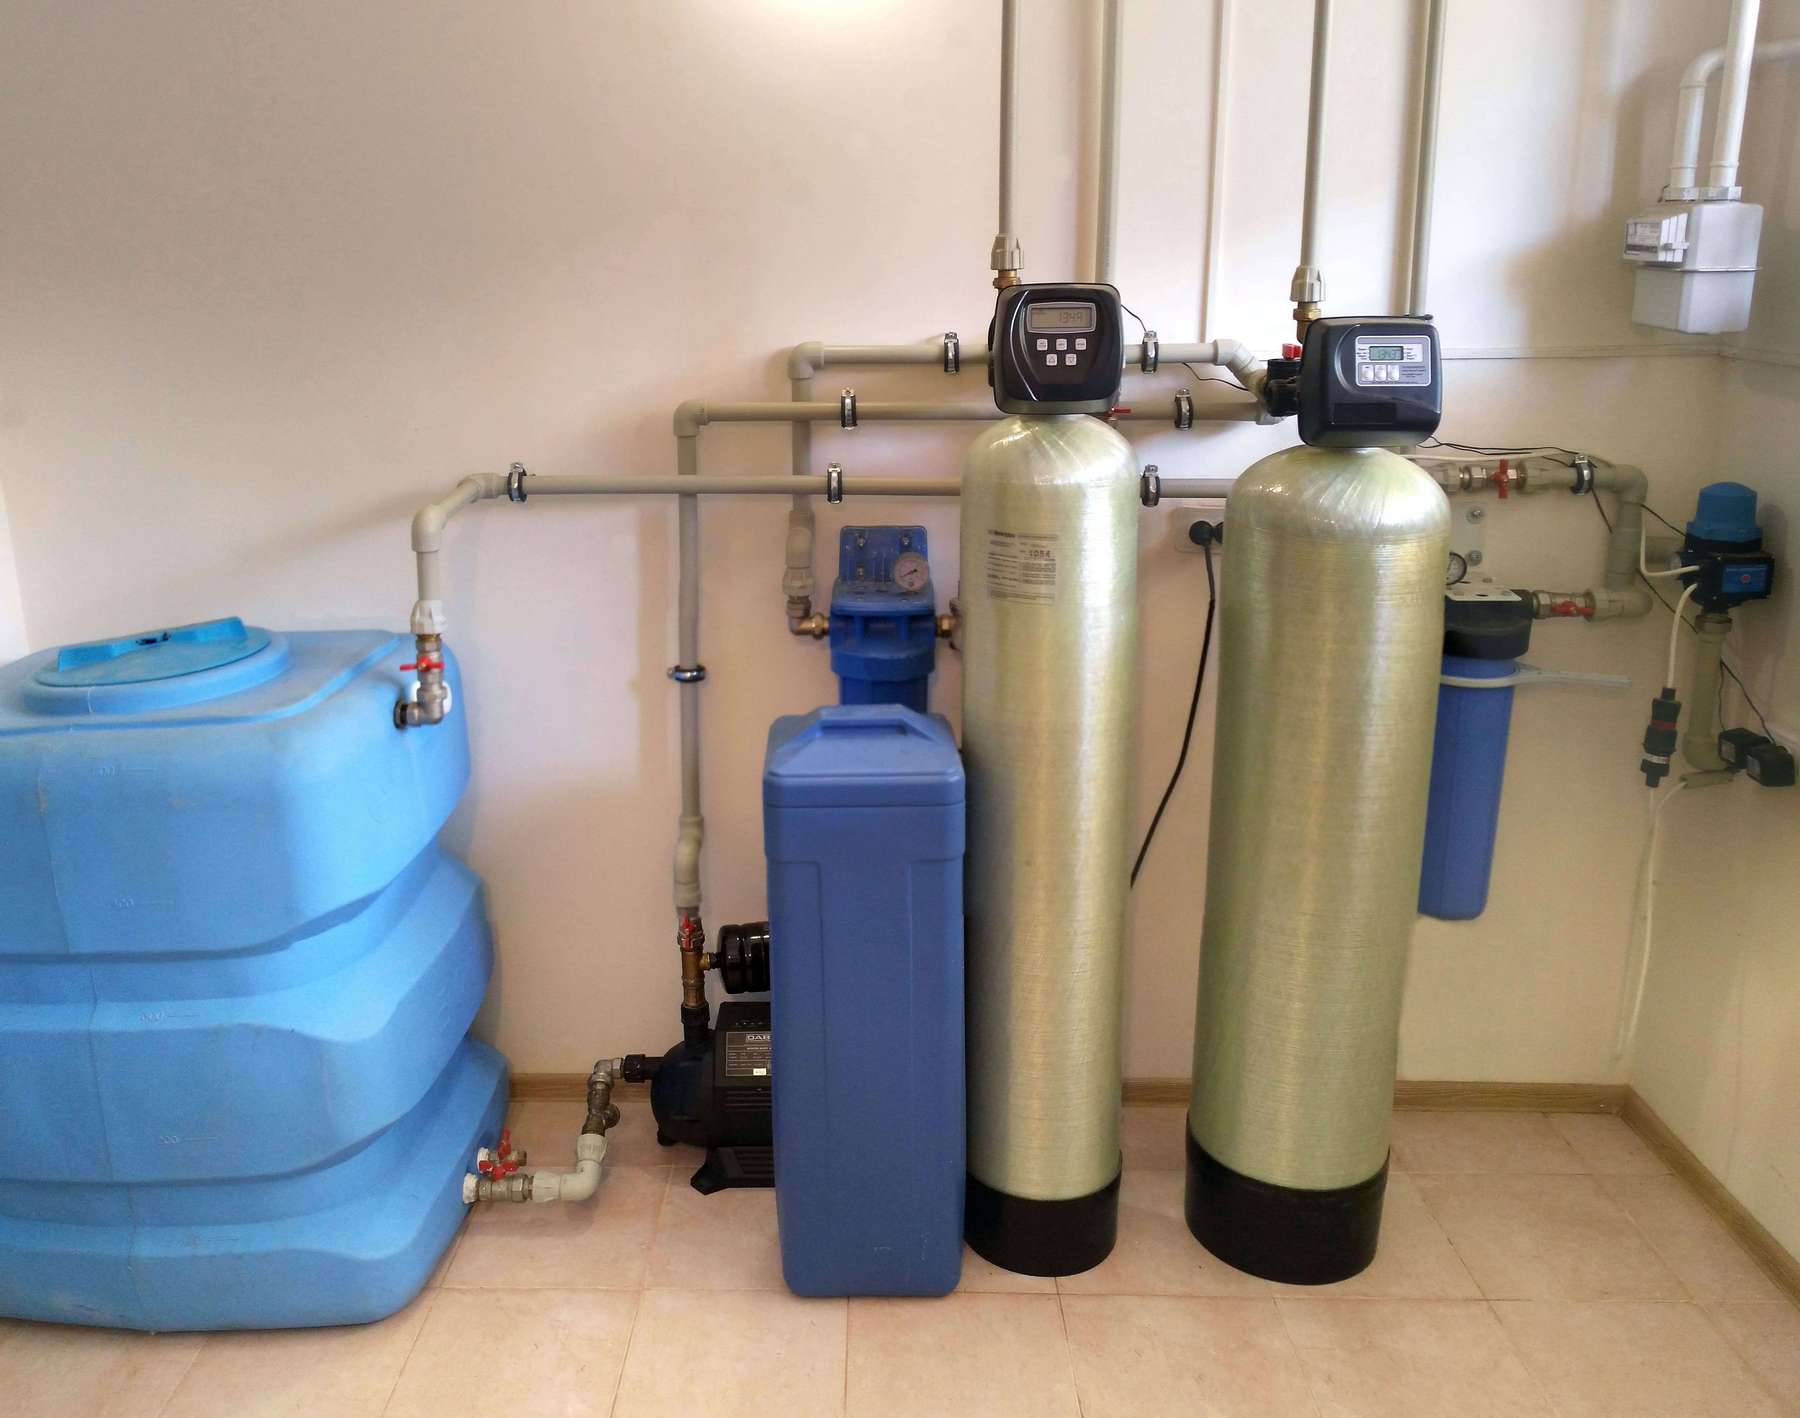 Монтаж водоподготовки. Система обезжелезивания воды (очистка воды от железа). Фильтр обезжелезивания 1354 т3. Аквафор обезжелезивание воды. Система обезжелезивания воды для скважины.